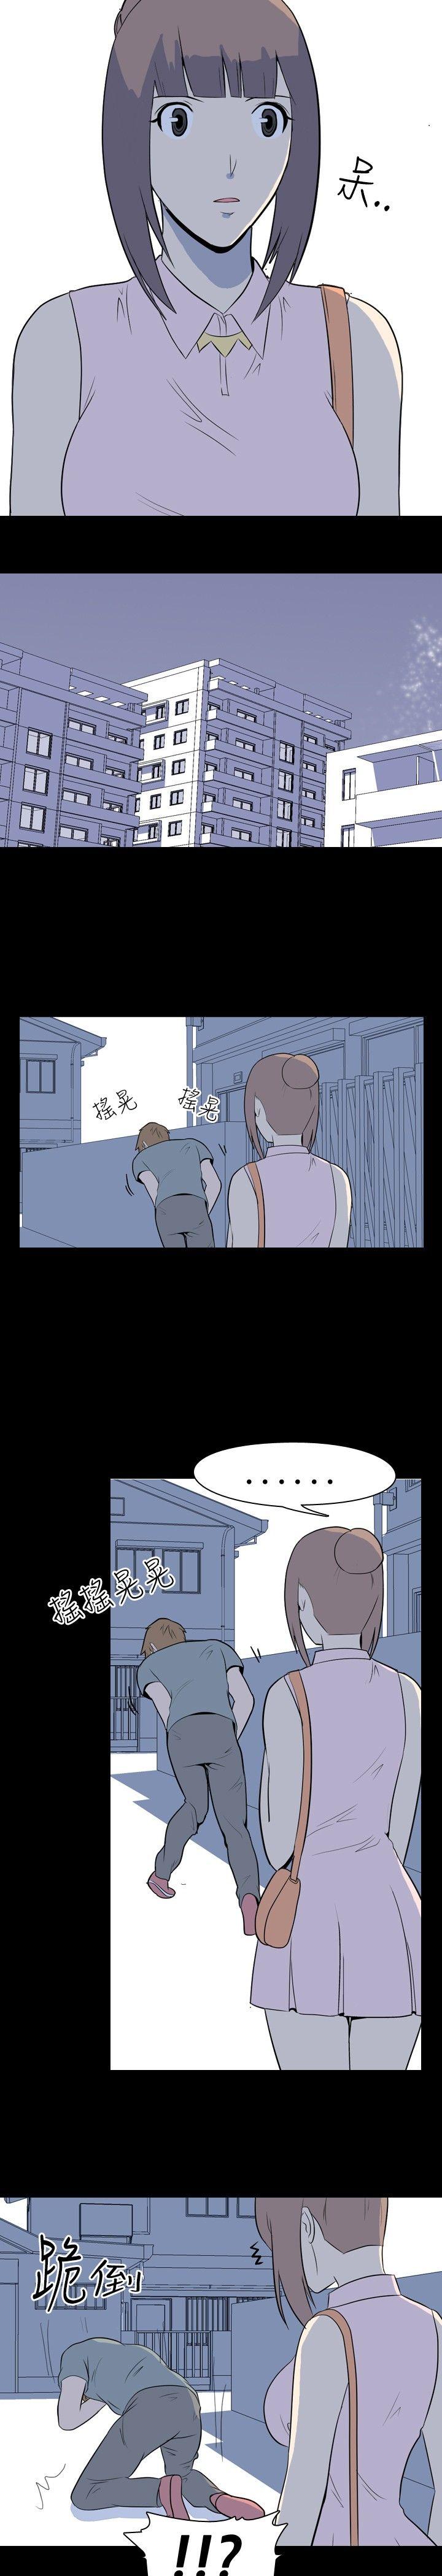 《我的色色夜说》漫画 第11话 - 暗恋(上)